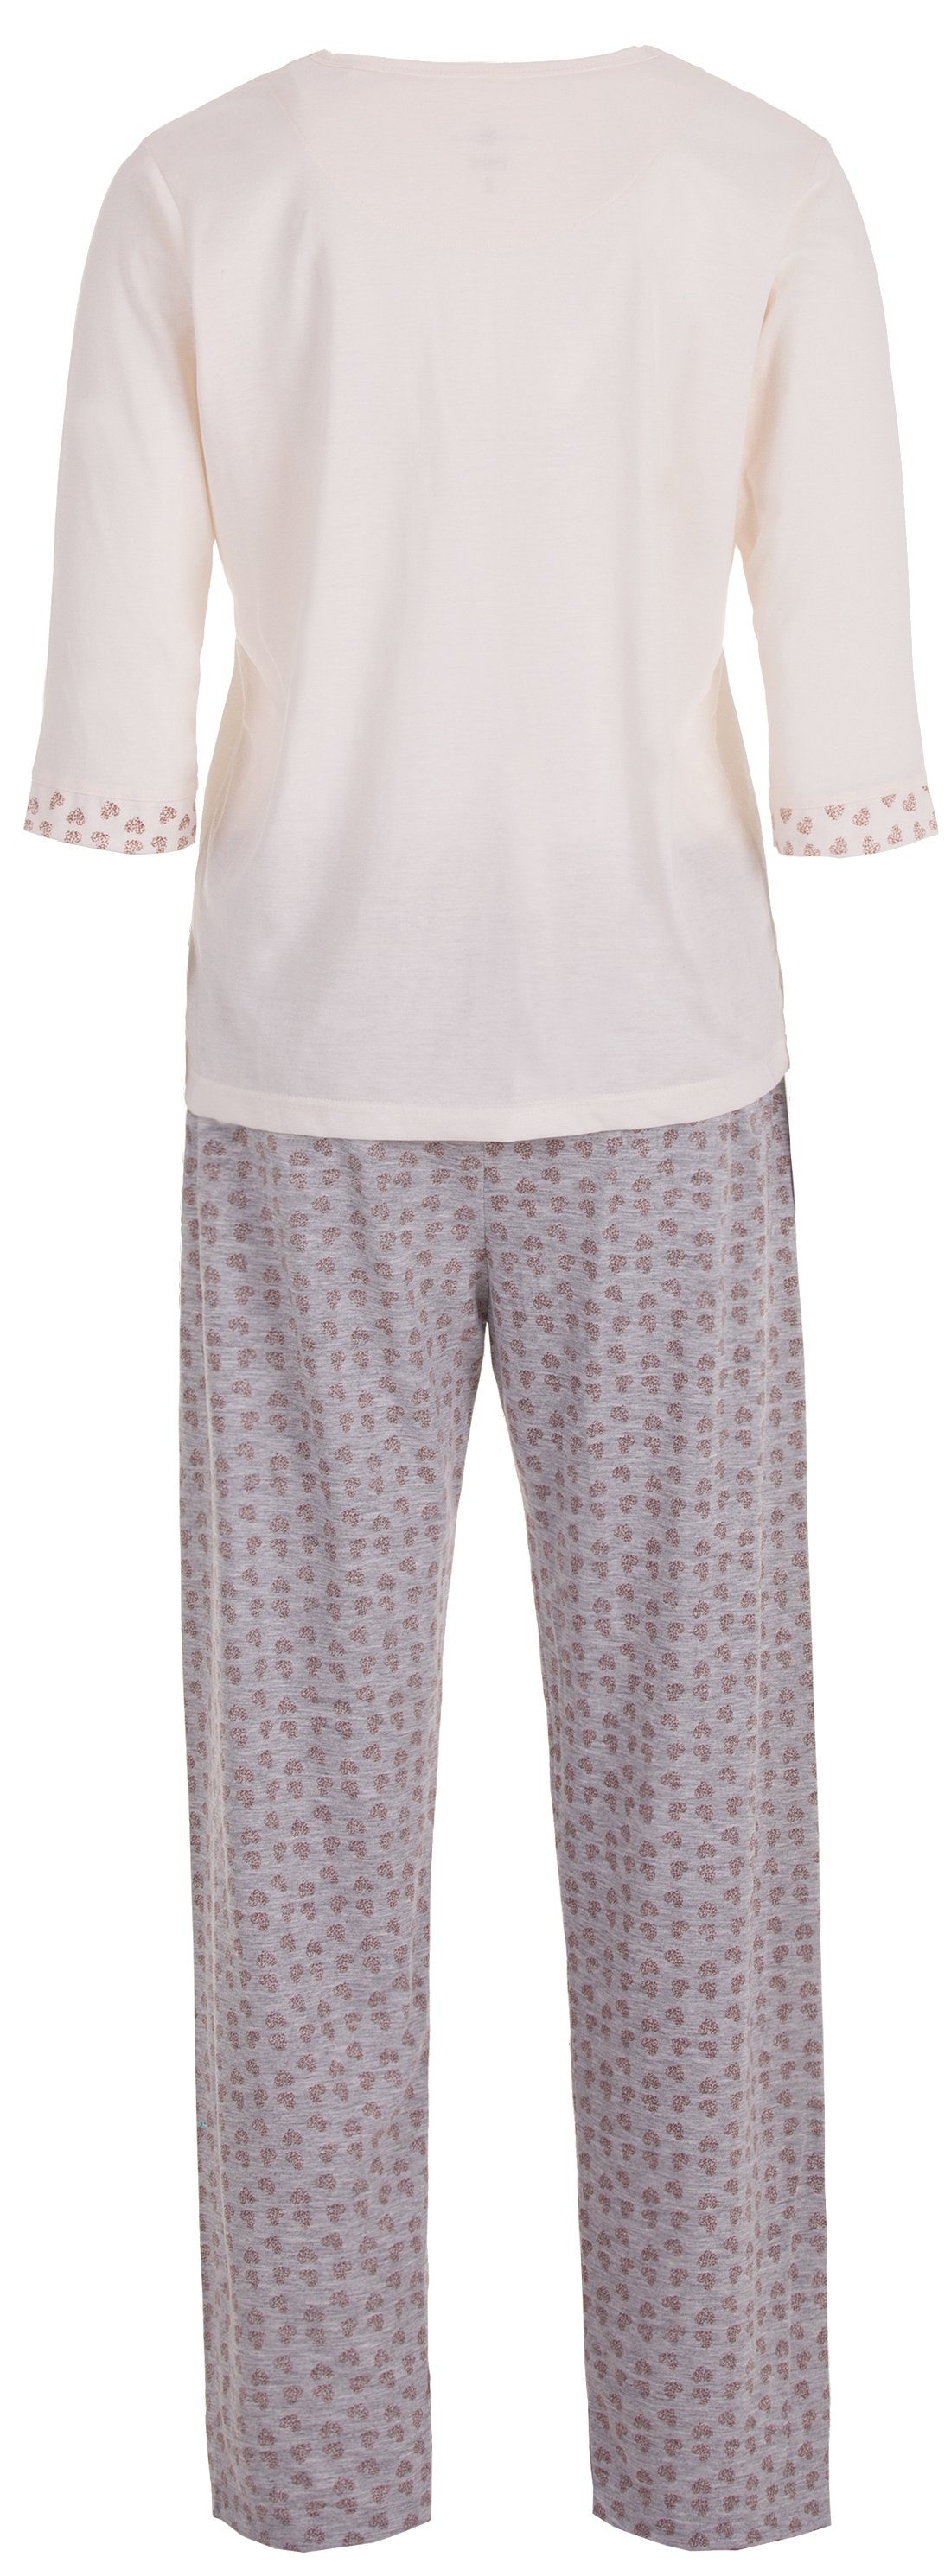 zeitlos Schlafanzug Pyjama Set Arm - off-white Heart 3/4